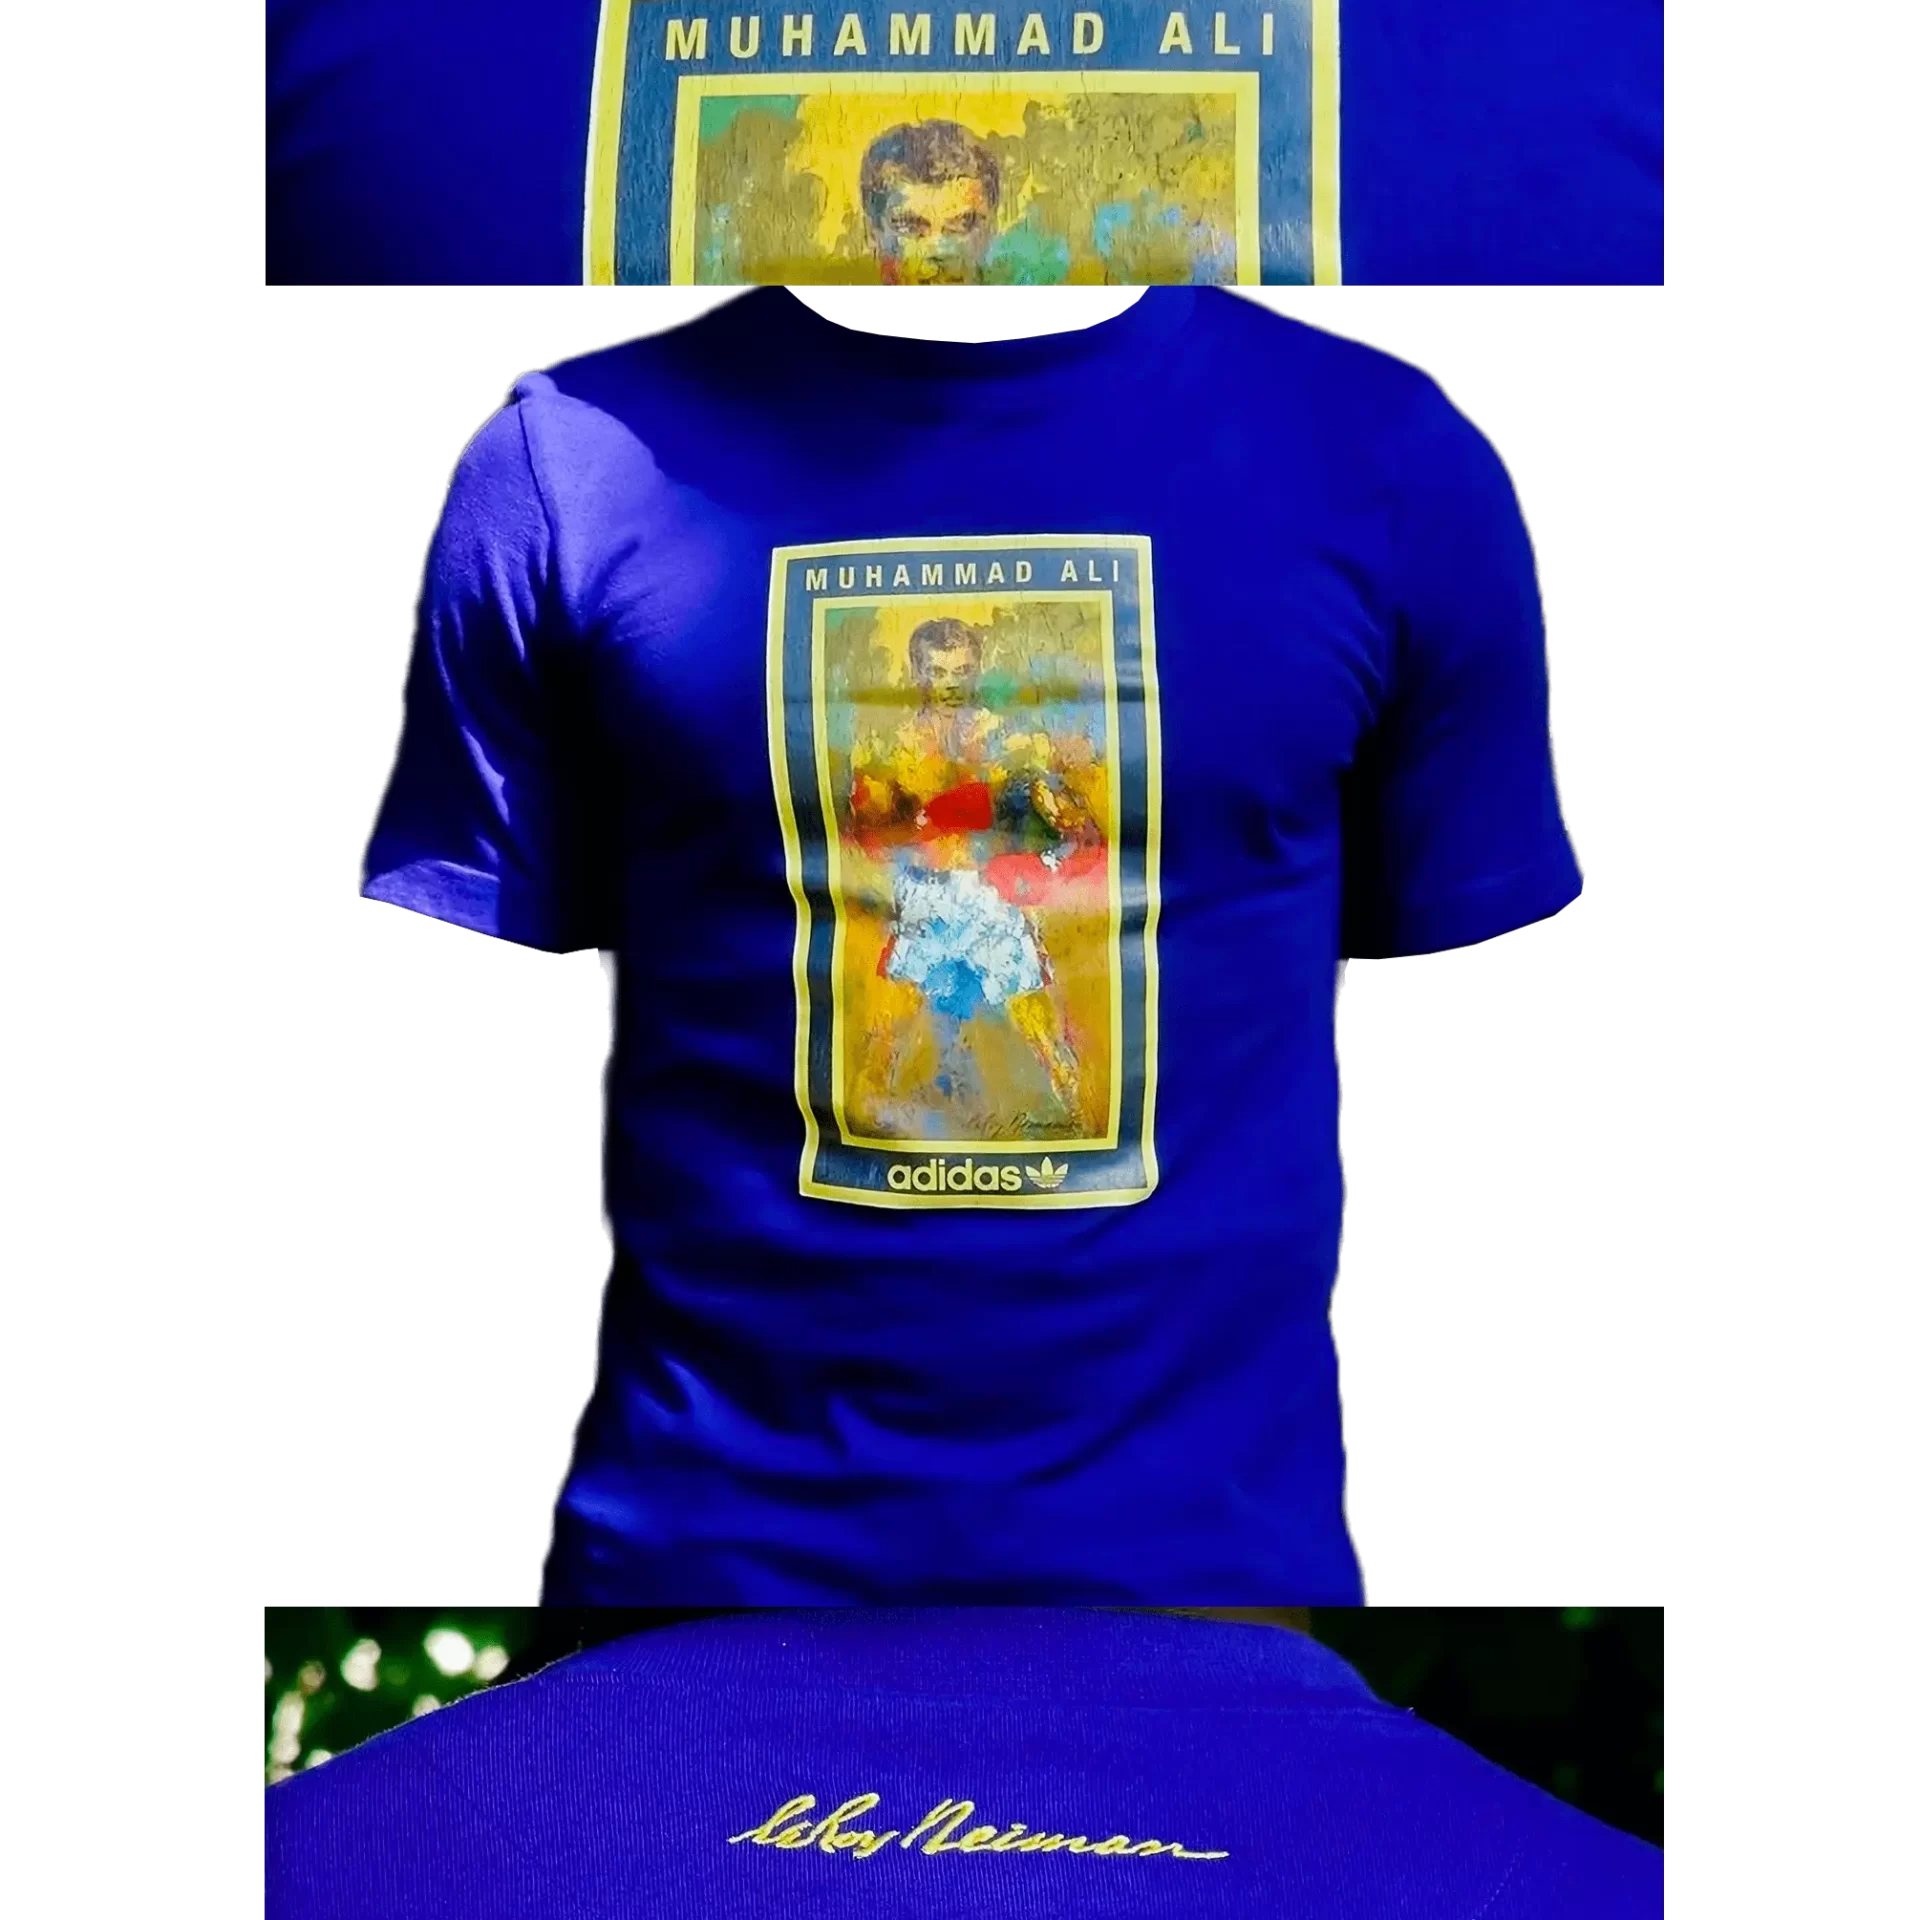 Men's 2007 Muhammad Ali Respect T-Shirt by Adidas: Tawdry (EnLawded.com file #lmchk78833ip2y124874kg9st)